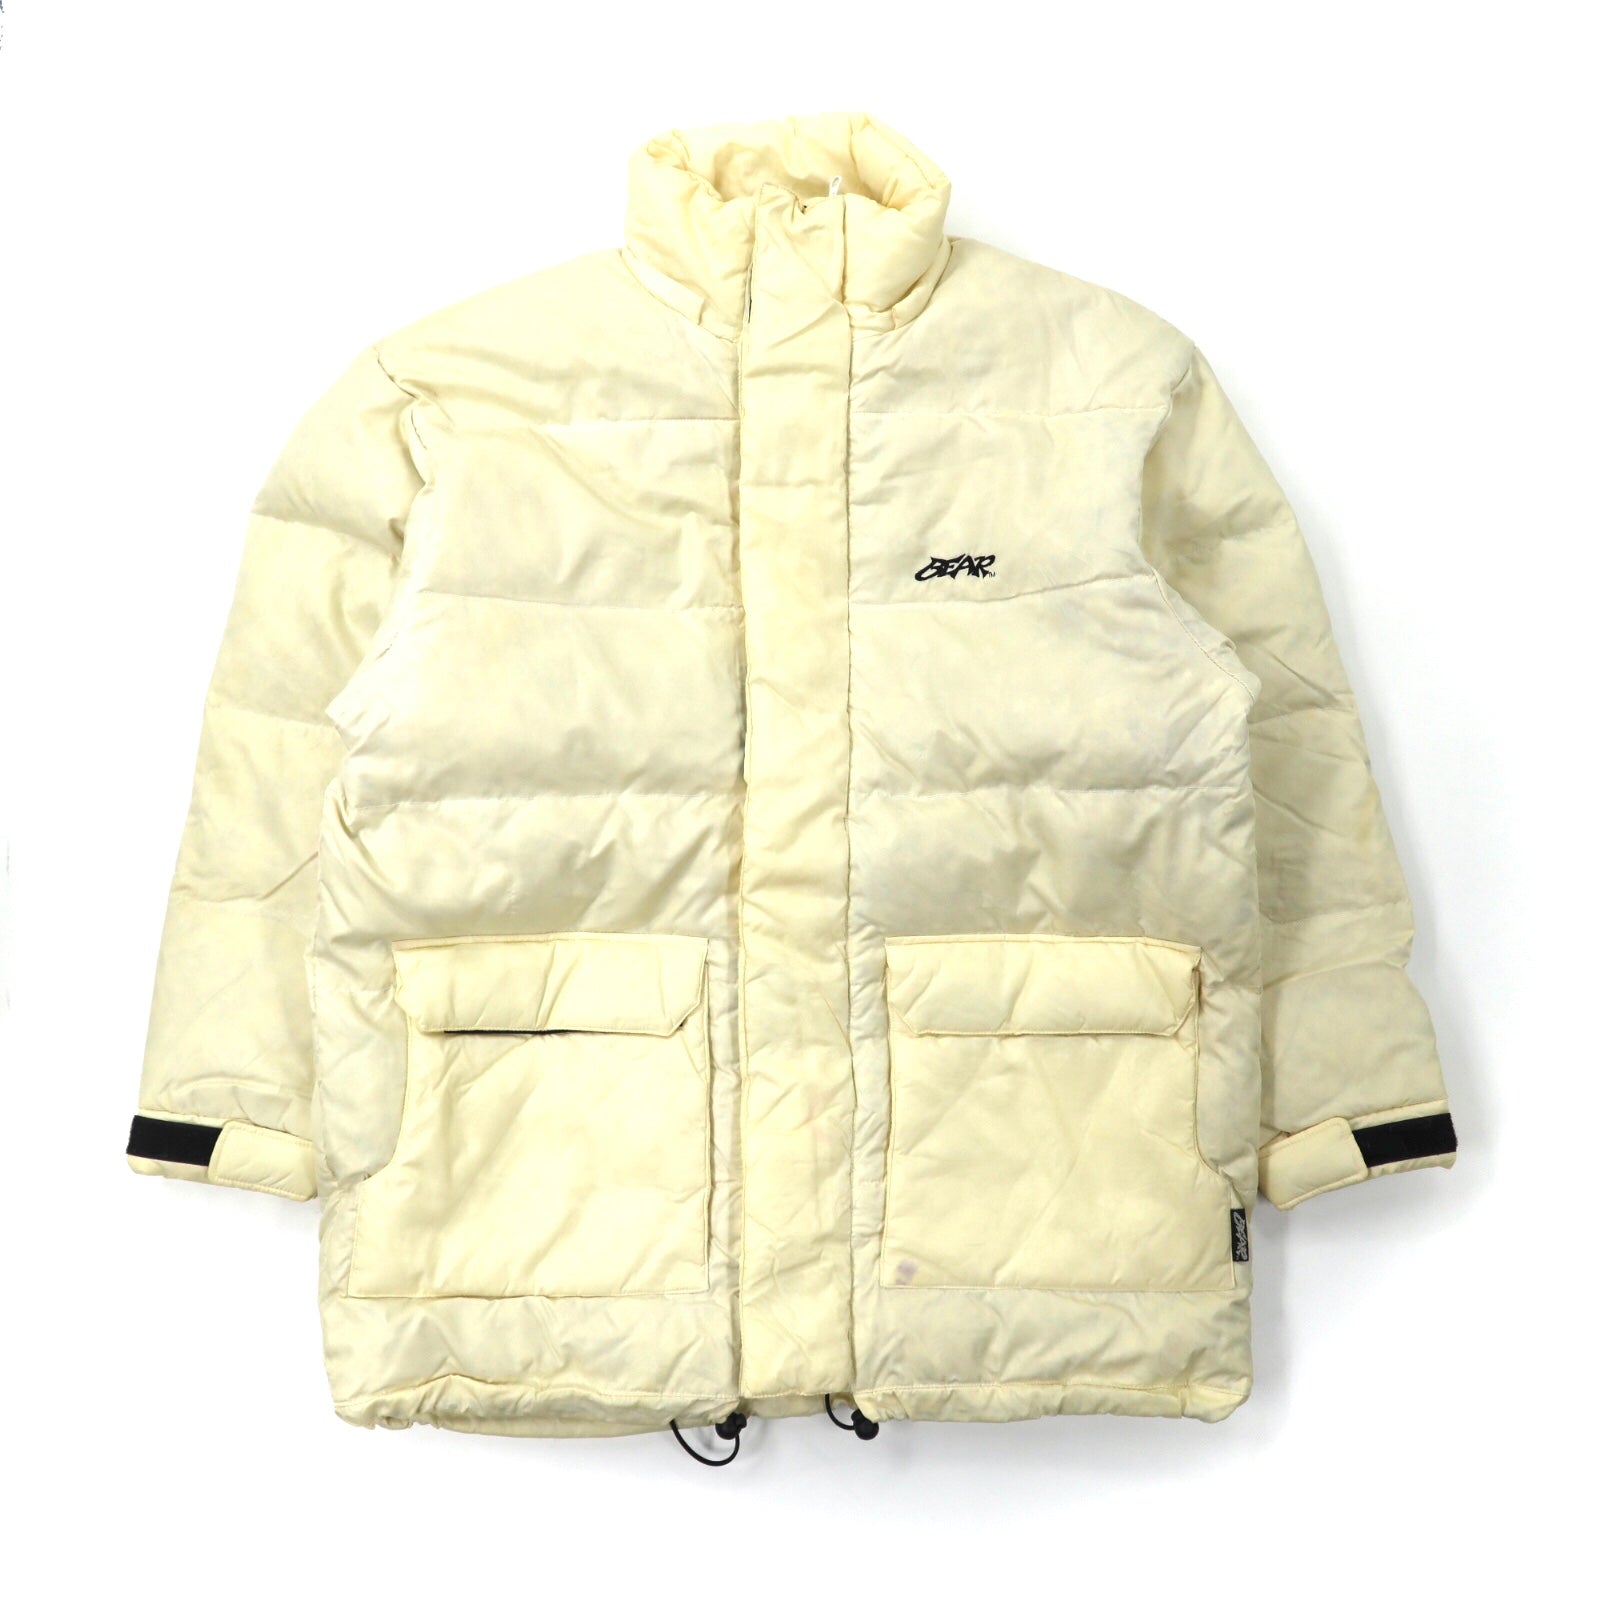 Bear USA Puffer Jacket M White Nylon Big Size Small Logo